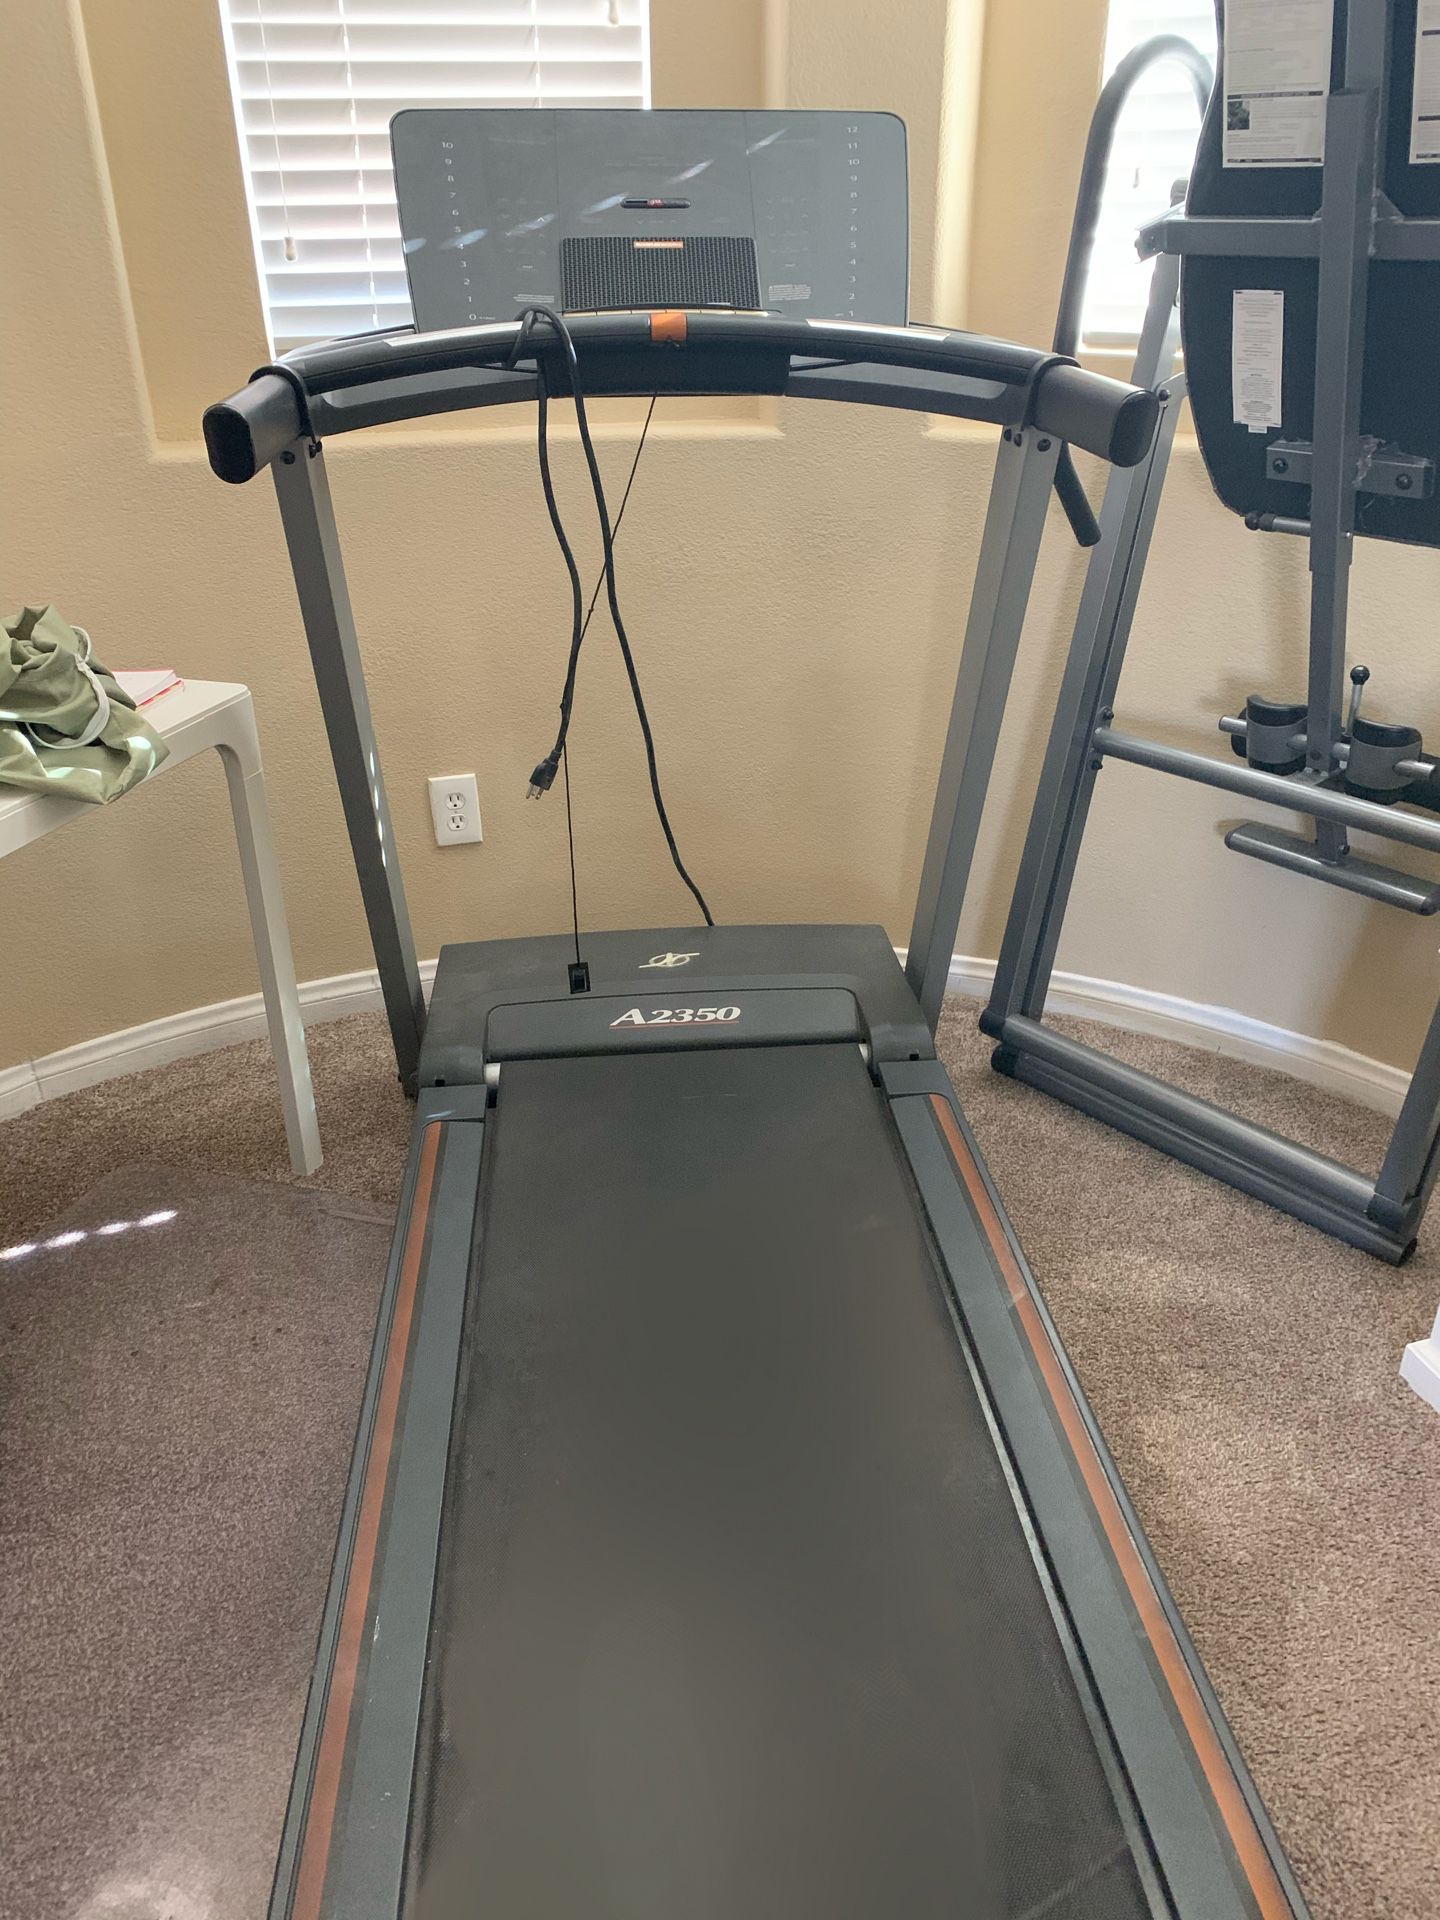 NordicTrack A2350 Treadmill